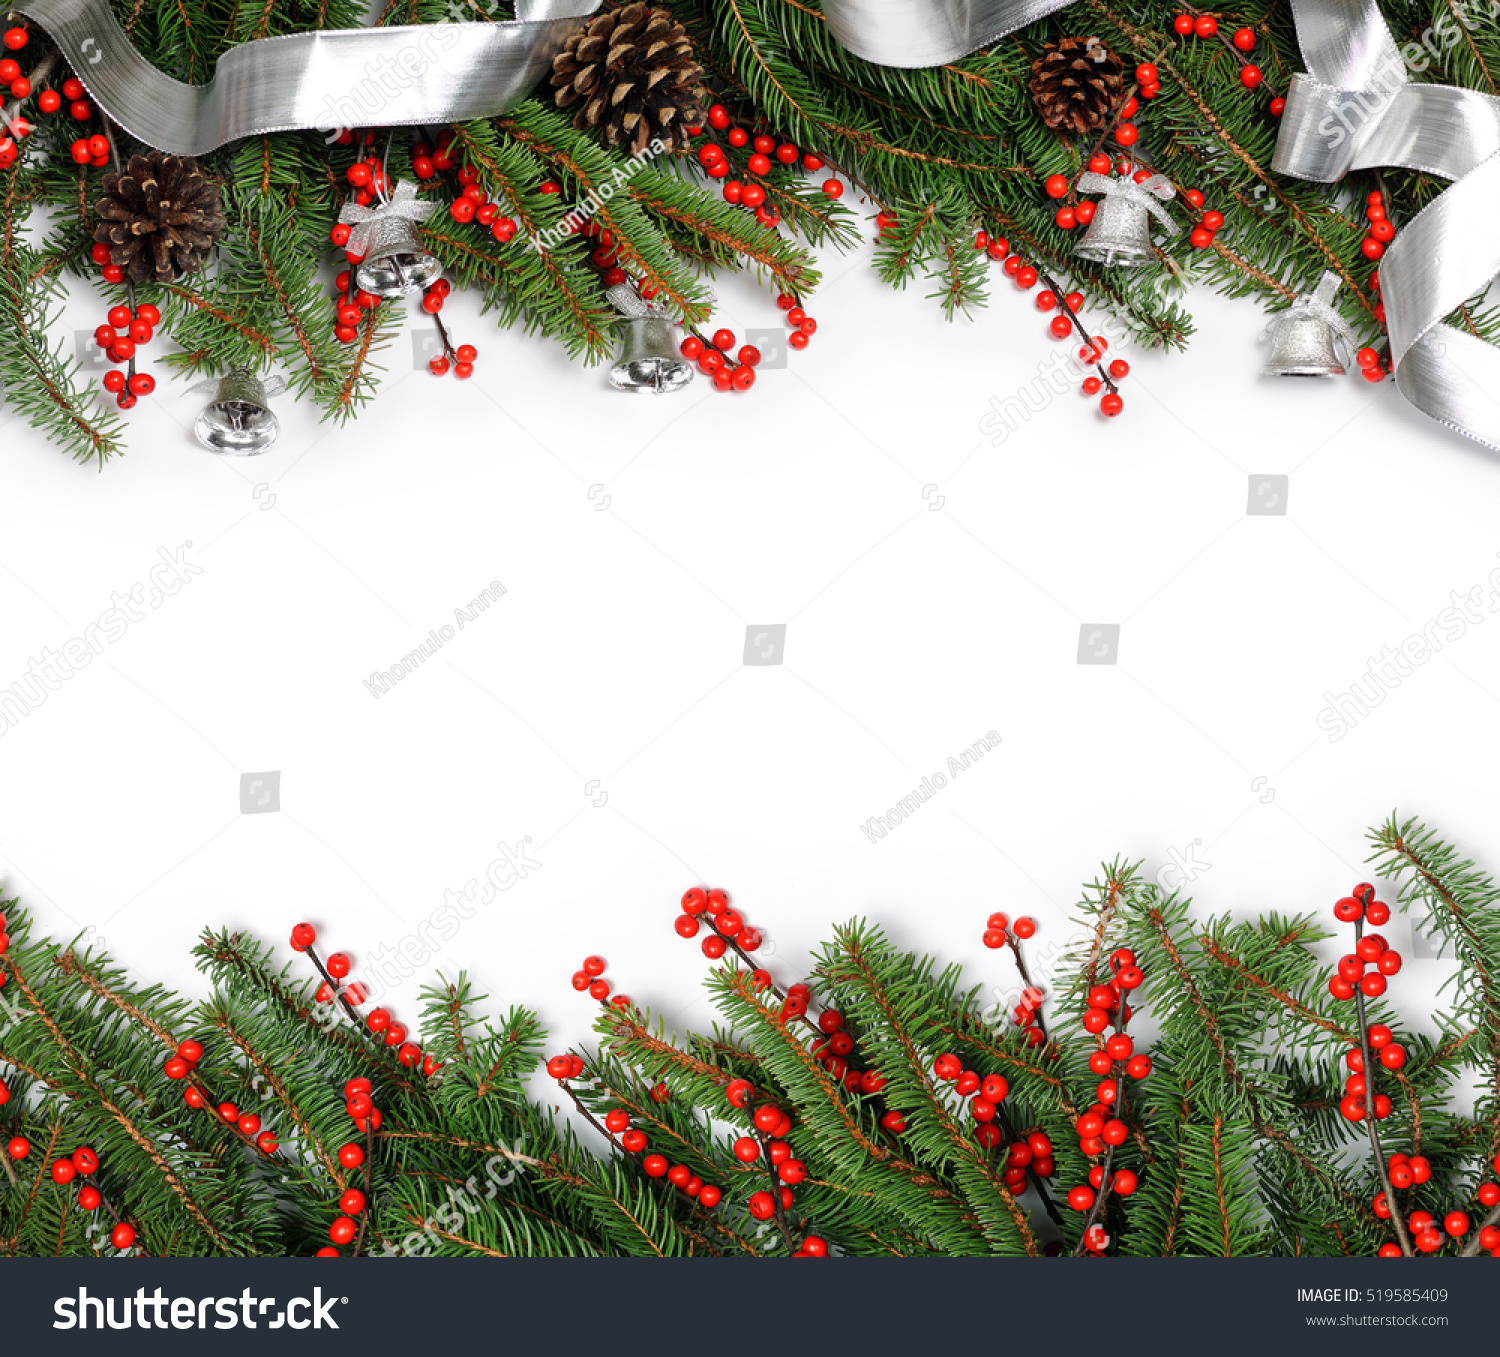 Christmas Frame Stock Photo 519585409 - Shutterstock